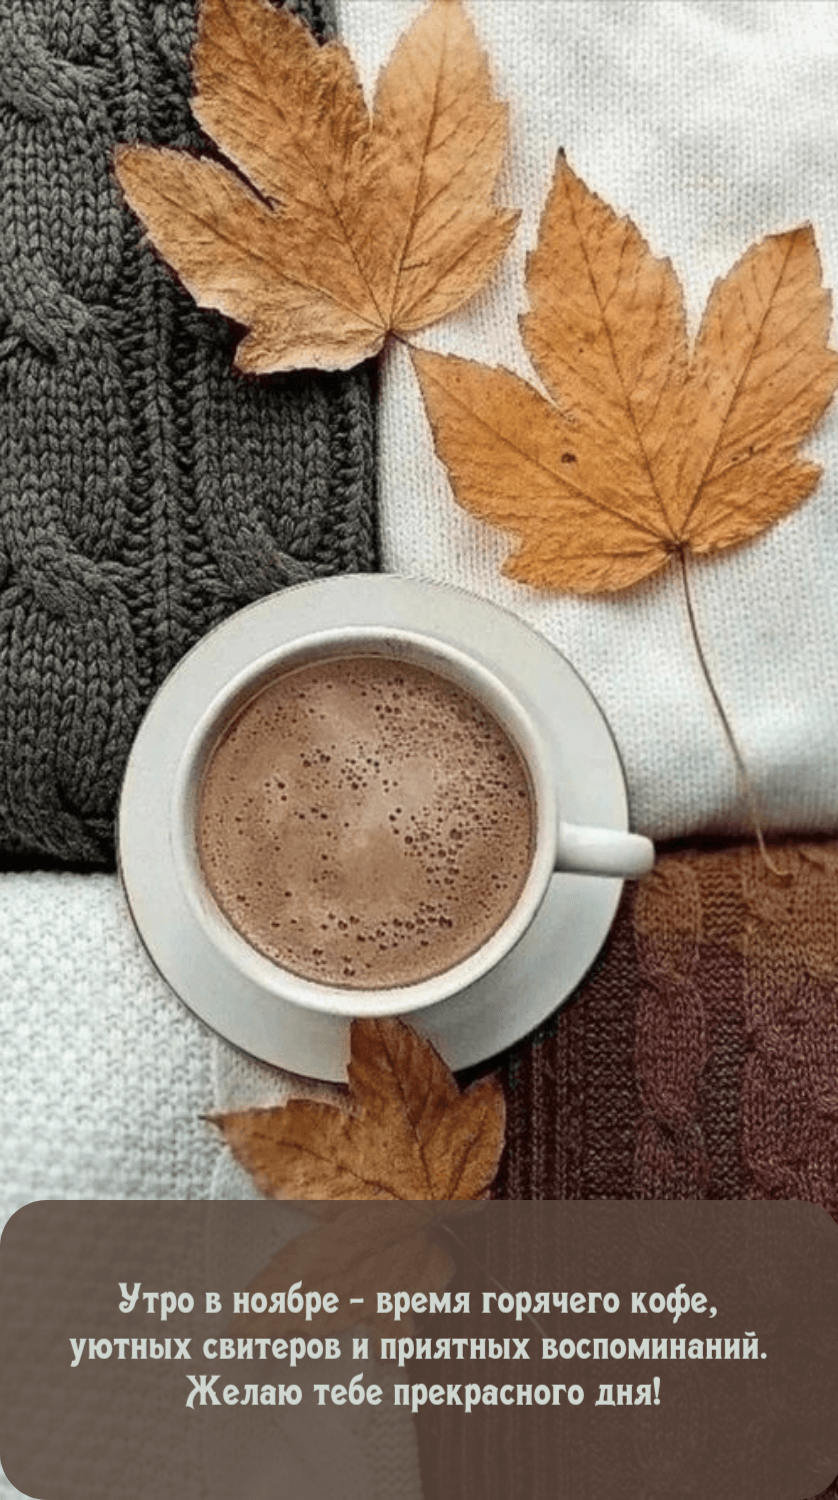 Утро в ноябре - время горячего кофе Прекрасного дня!